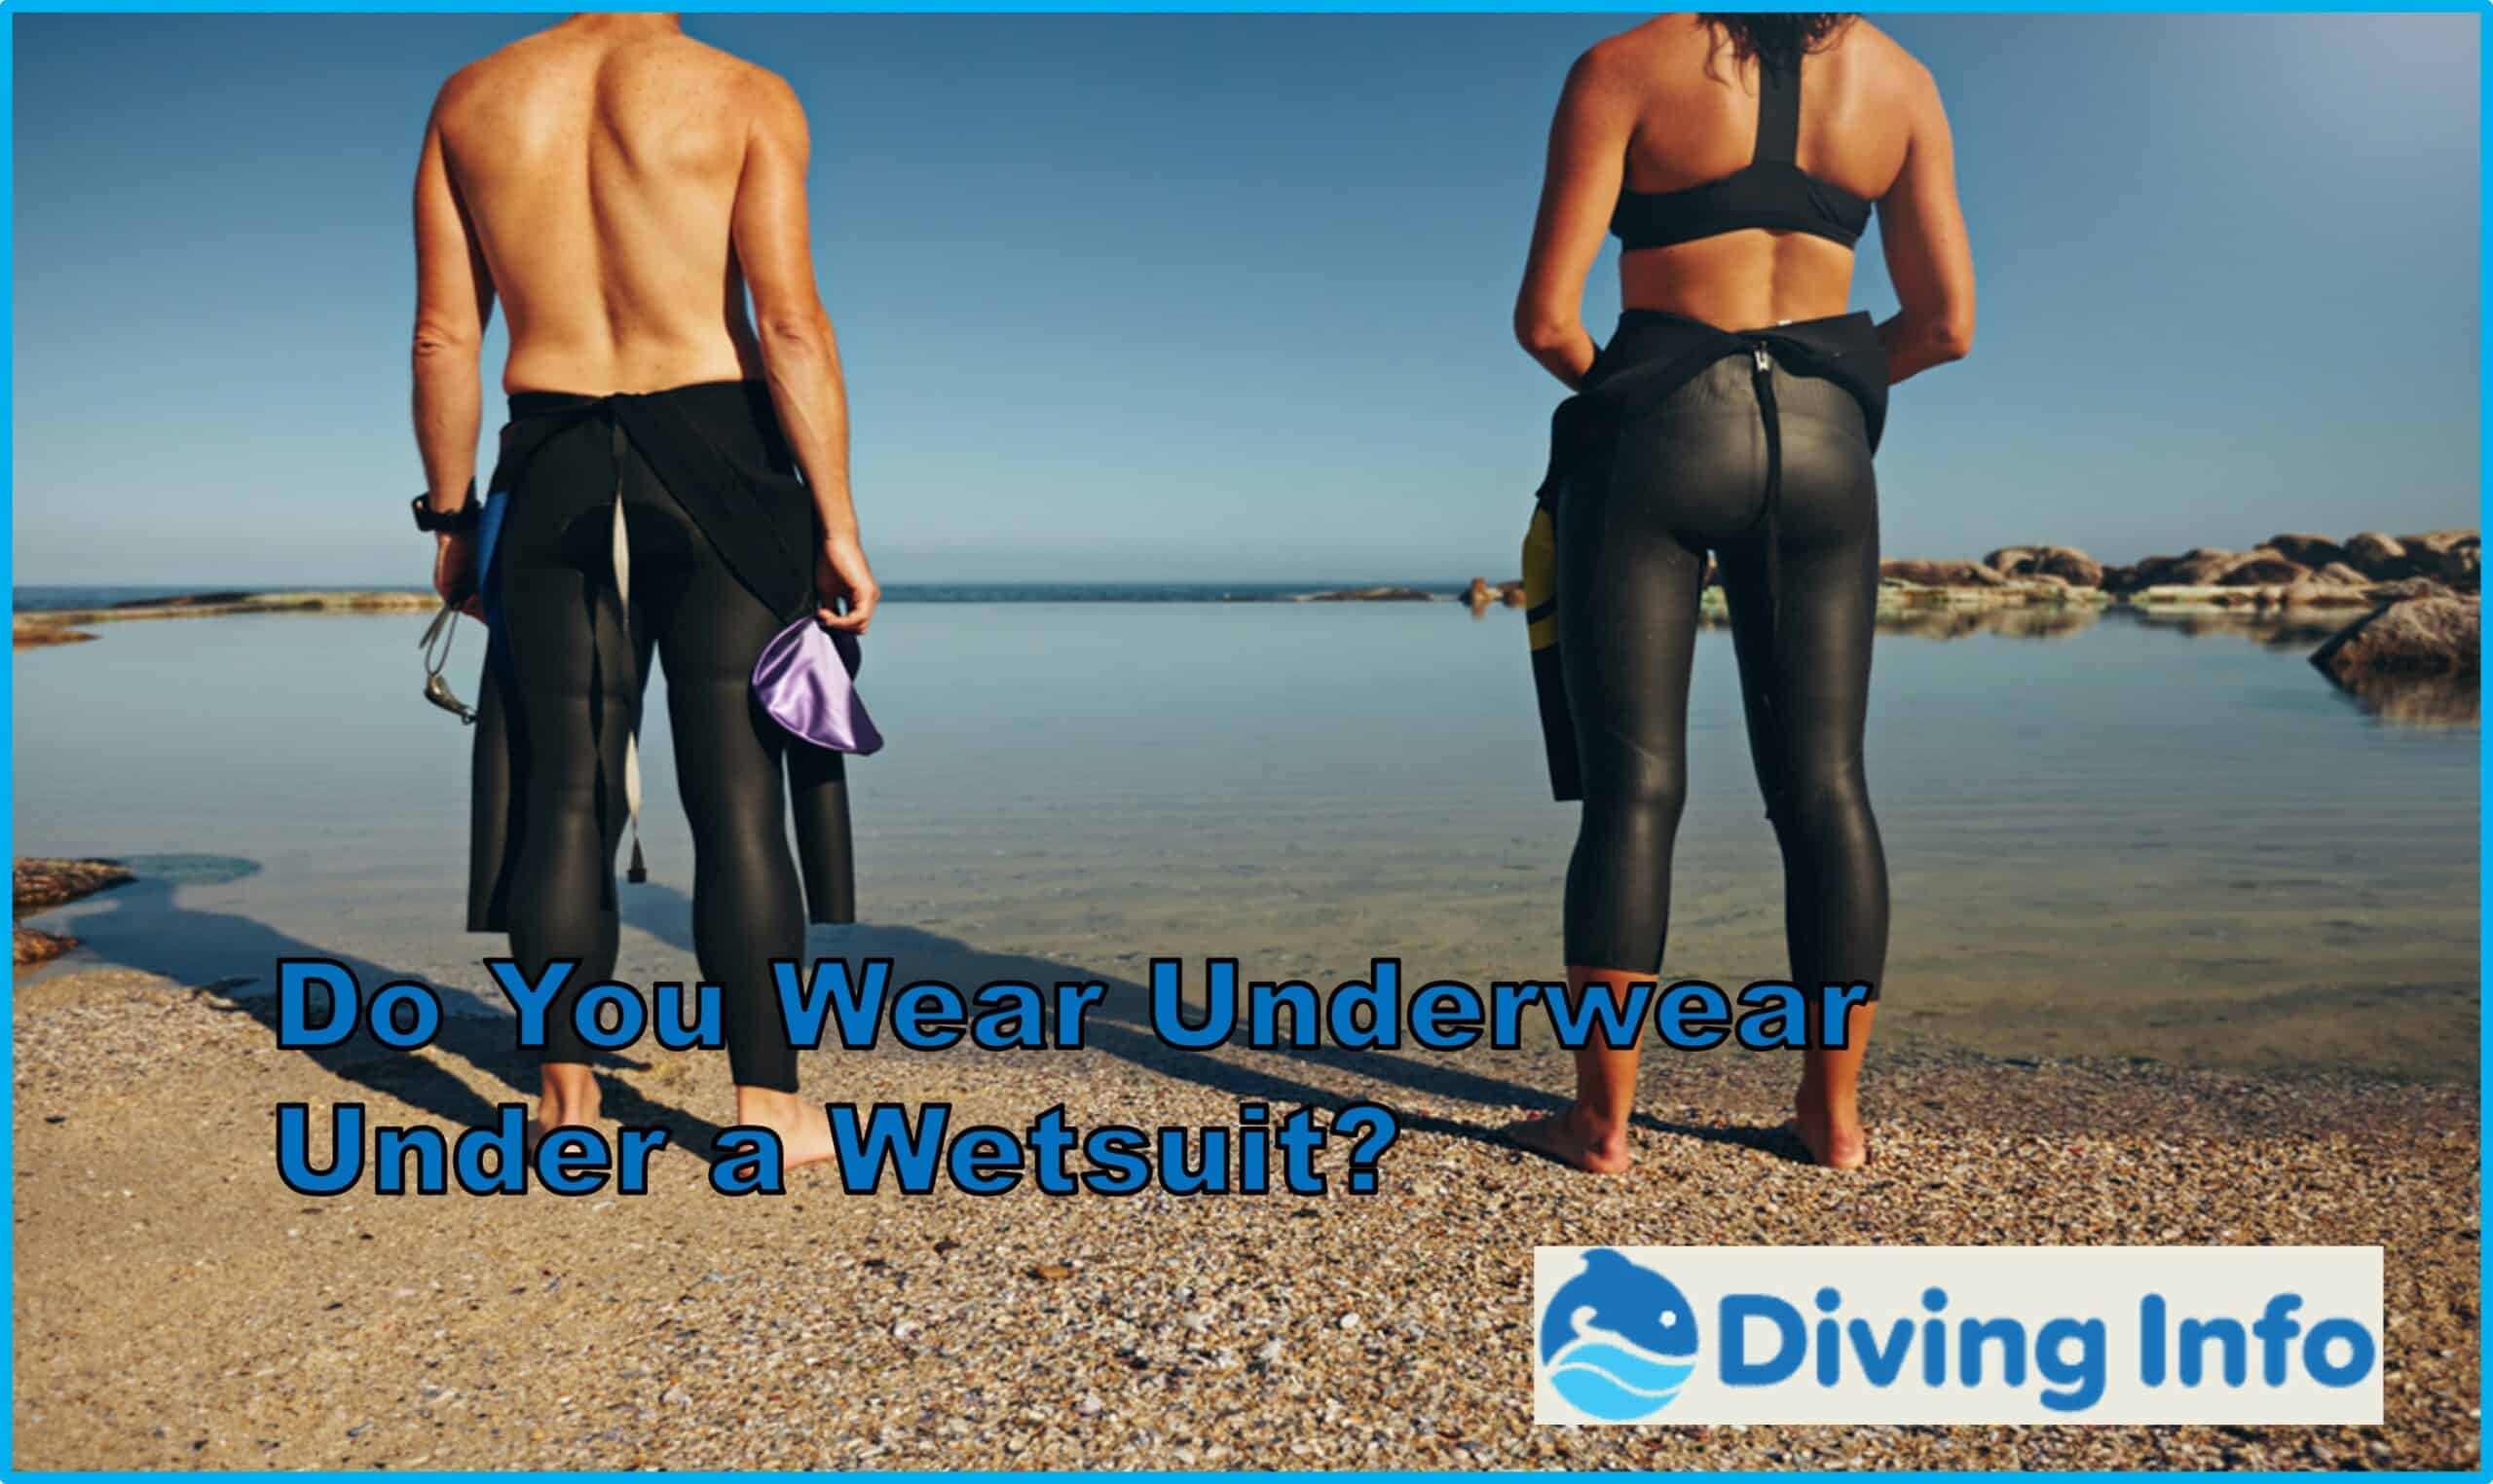 Do You Wear Underwear Under a Wetsuit?